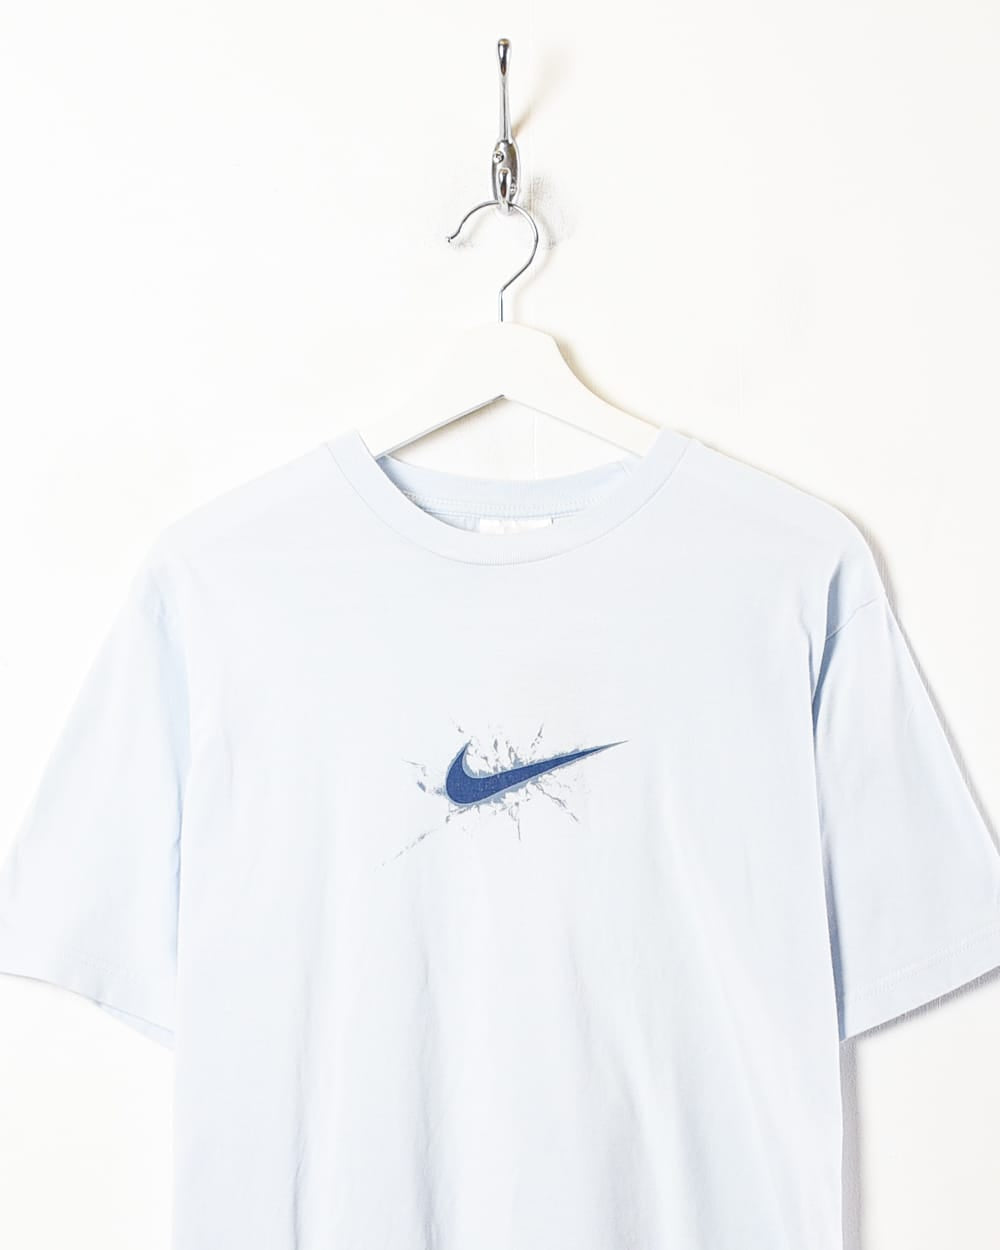 BabyBlue Nike T-Shirt - Medium